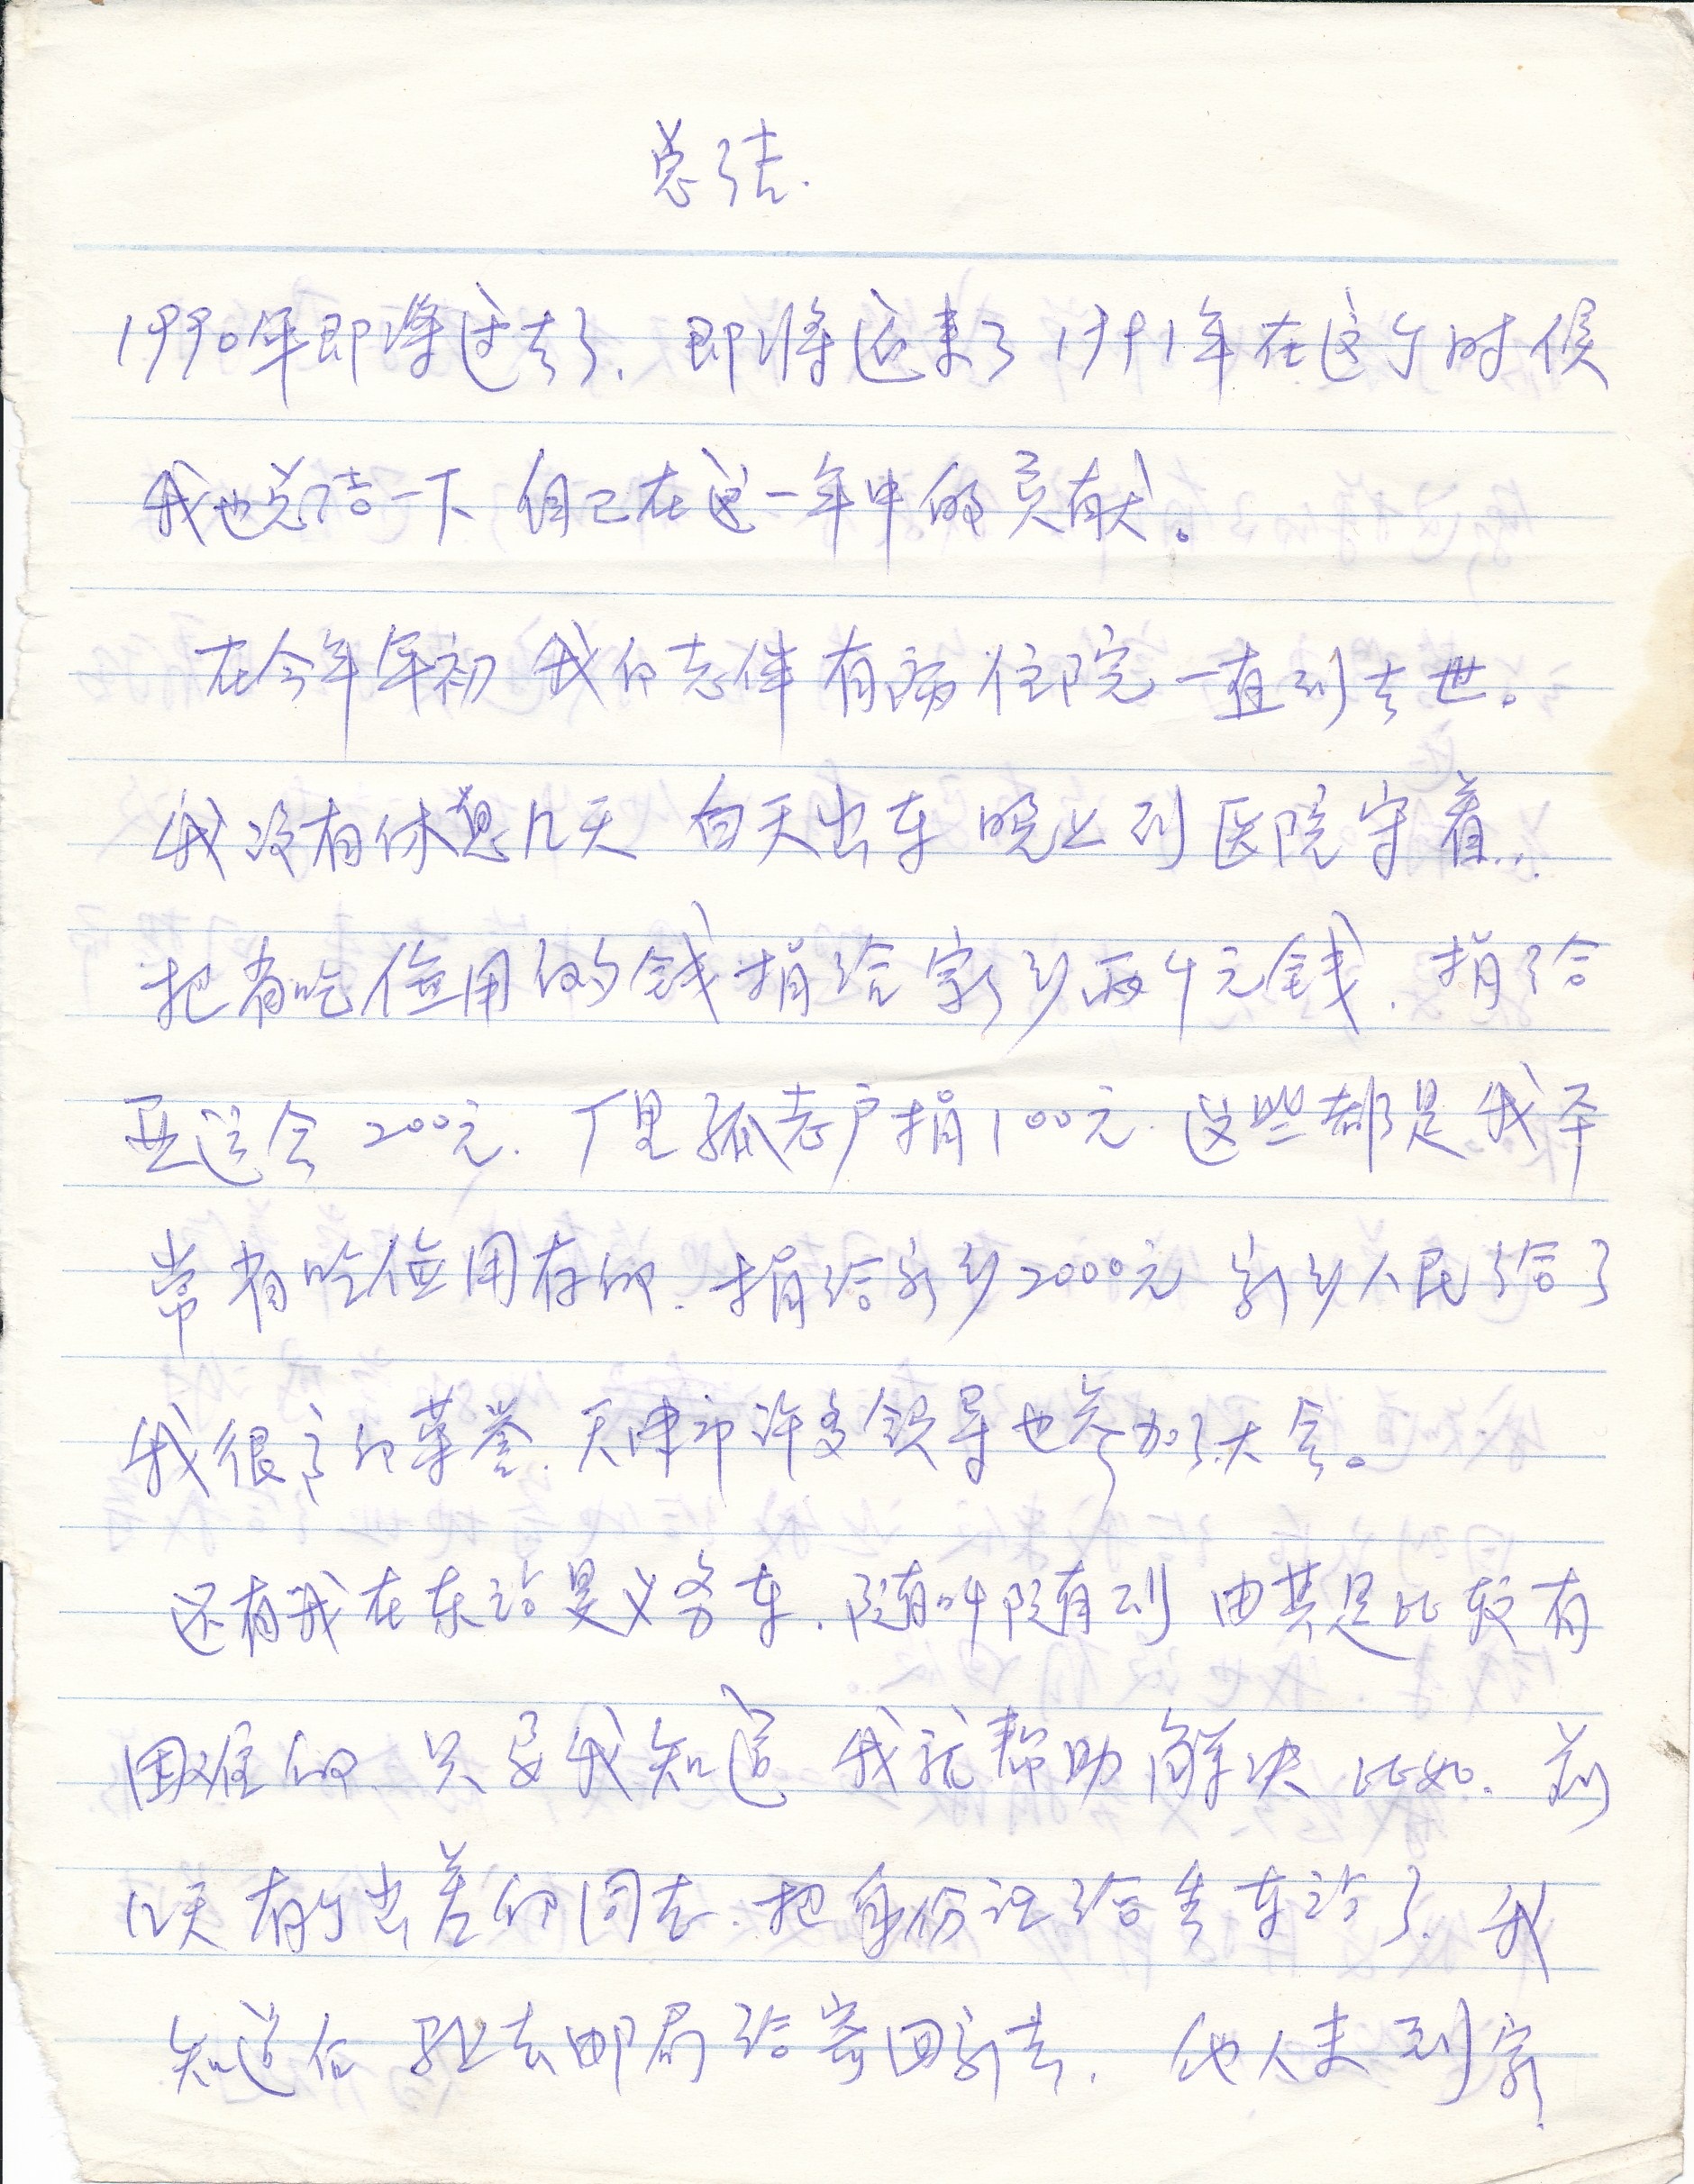 1990年白芳礼手稿